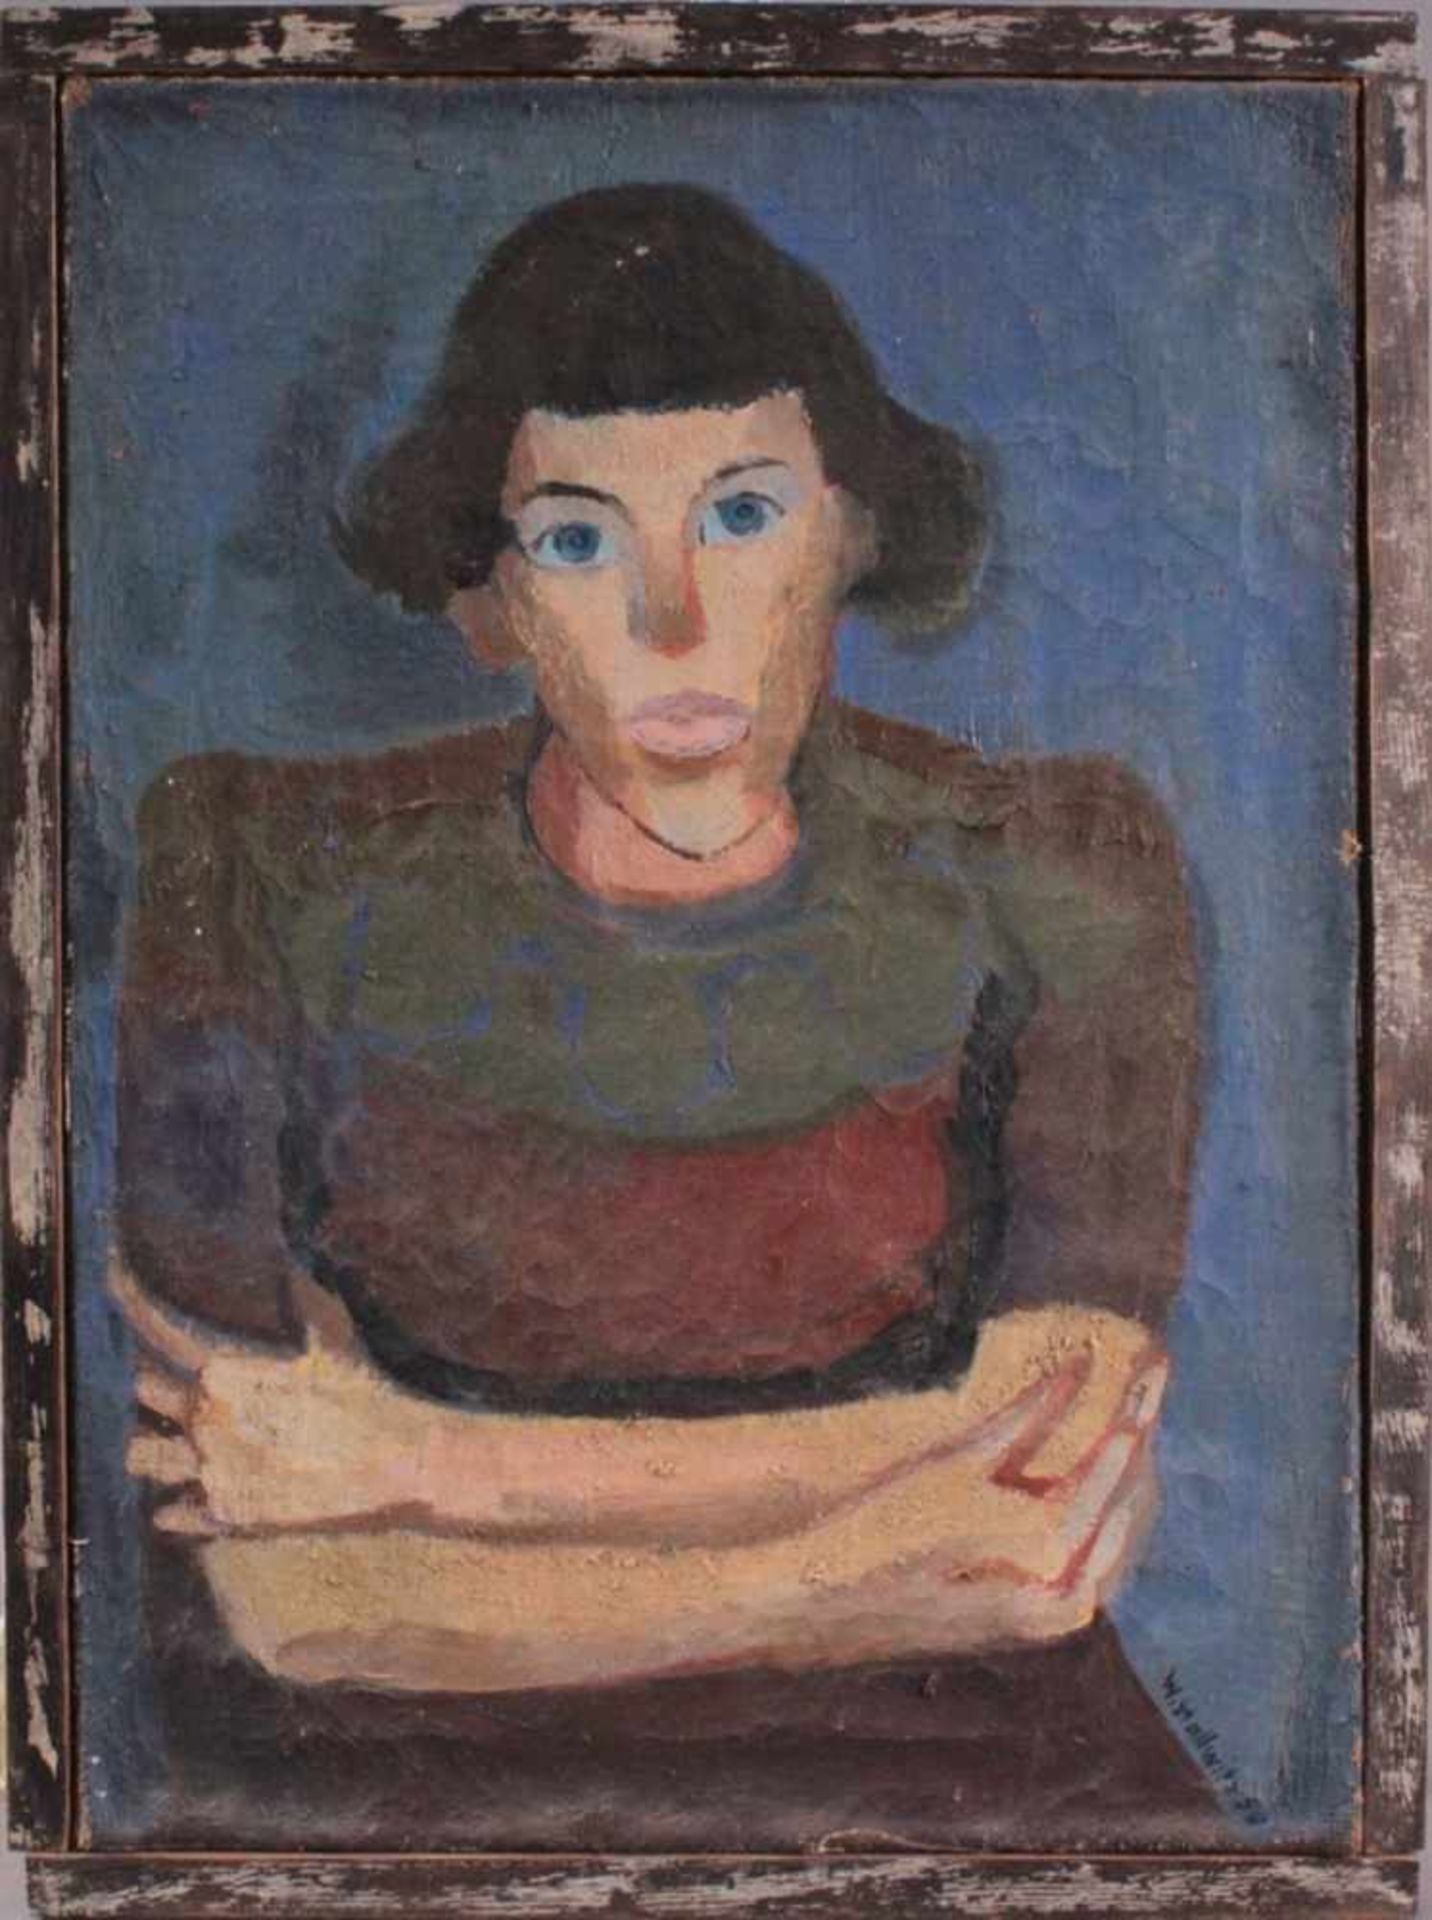 Walter Stallwitz (*28. April 1929 in Mannheim)"Mädchen Portrait". Öl auf Leinwand, rechts